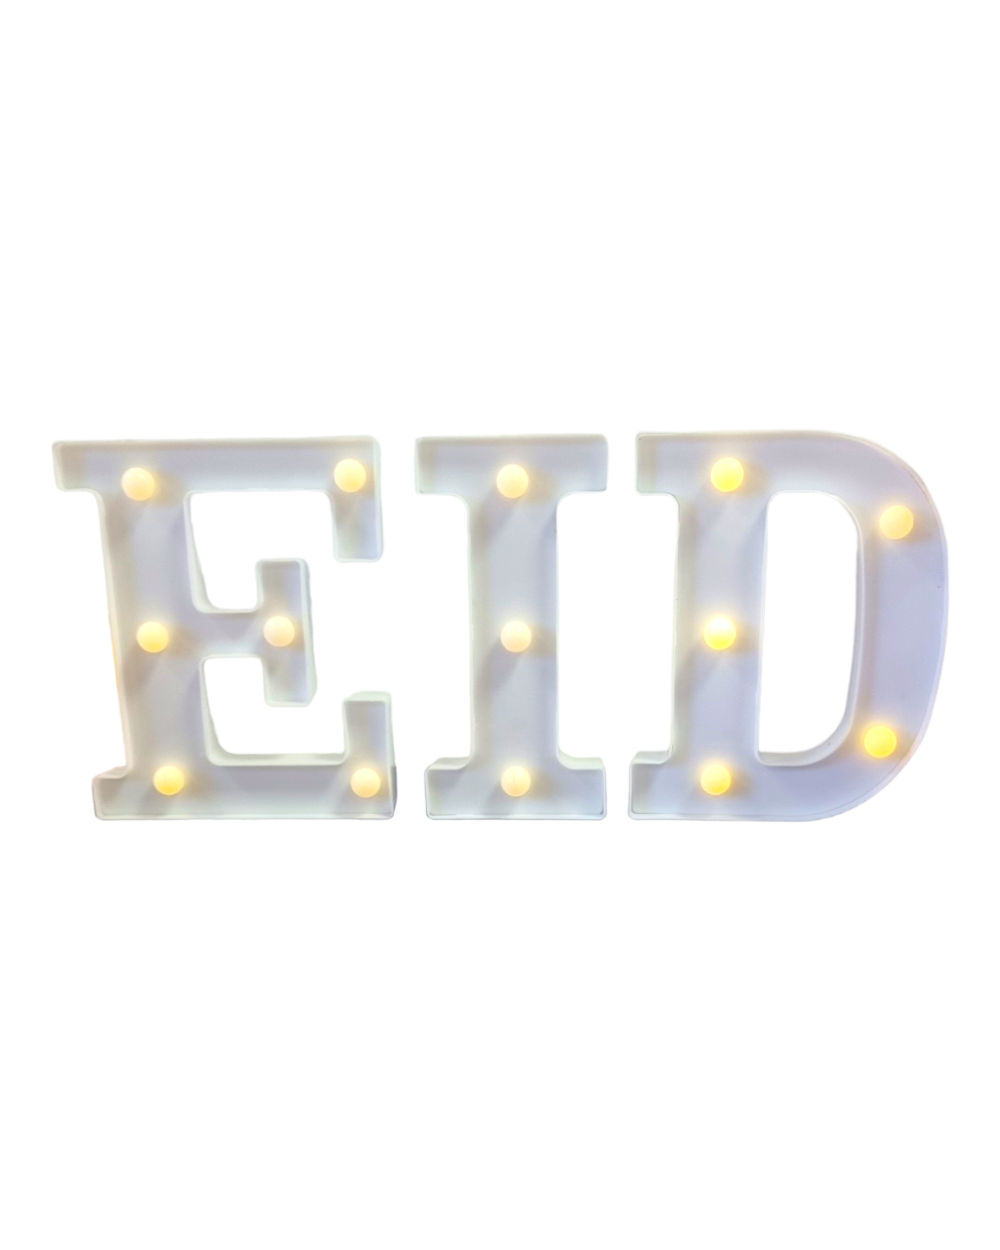 Eid light letters - White